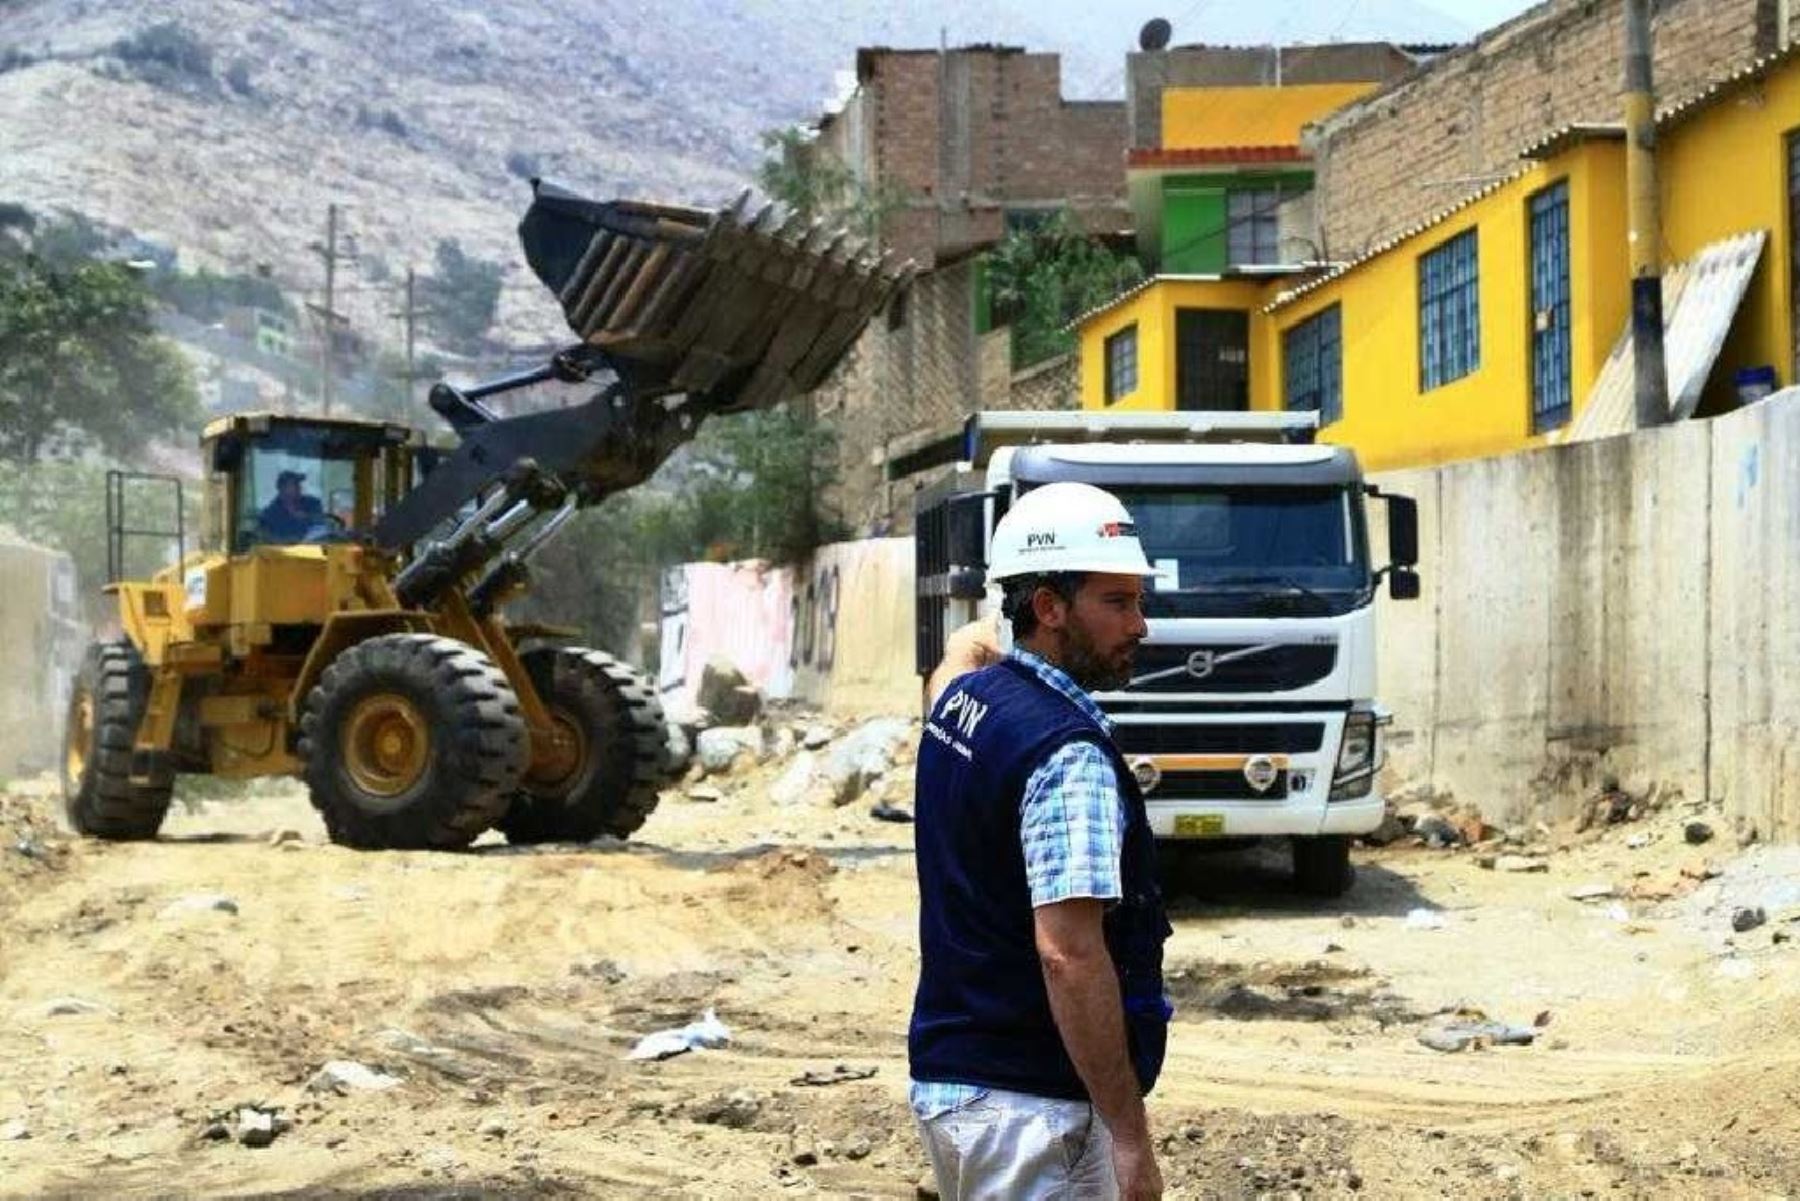 Labores comprenden las quebradas consideradas de alto riesgo, entre Chosica y el puente Ricardo Palma, provincia de Huarochirí, región Lima,